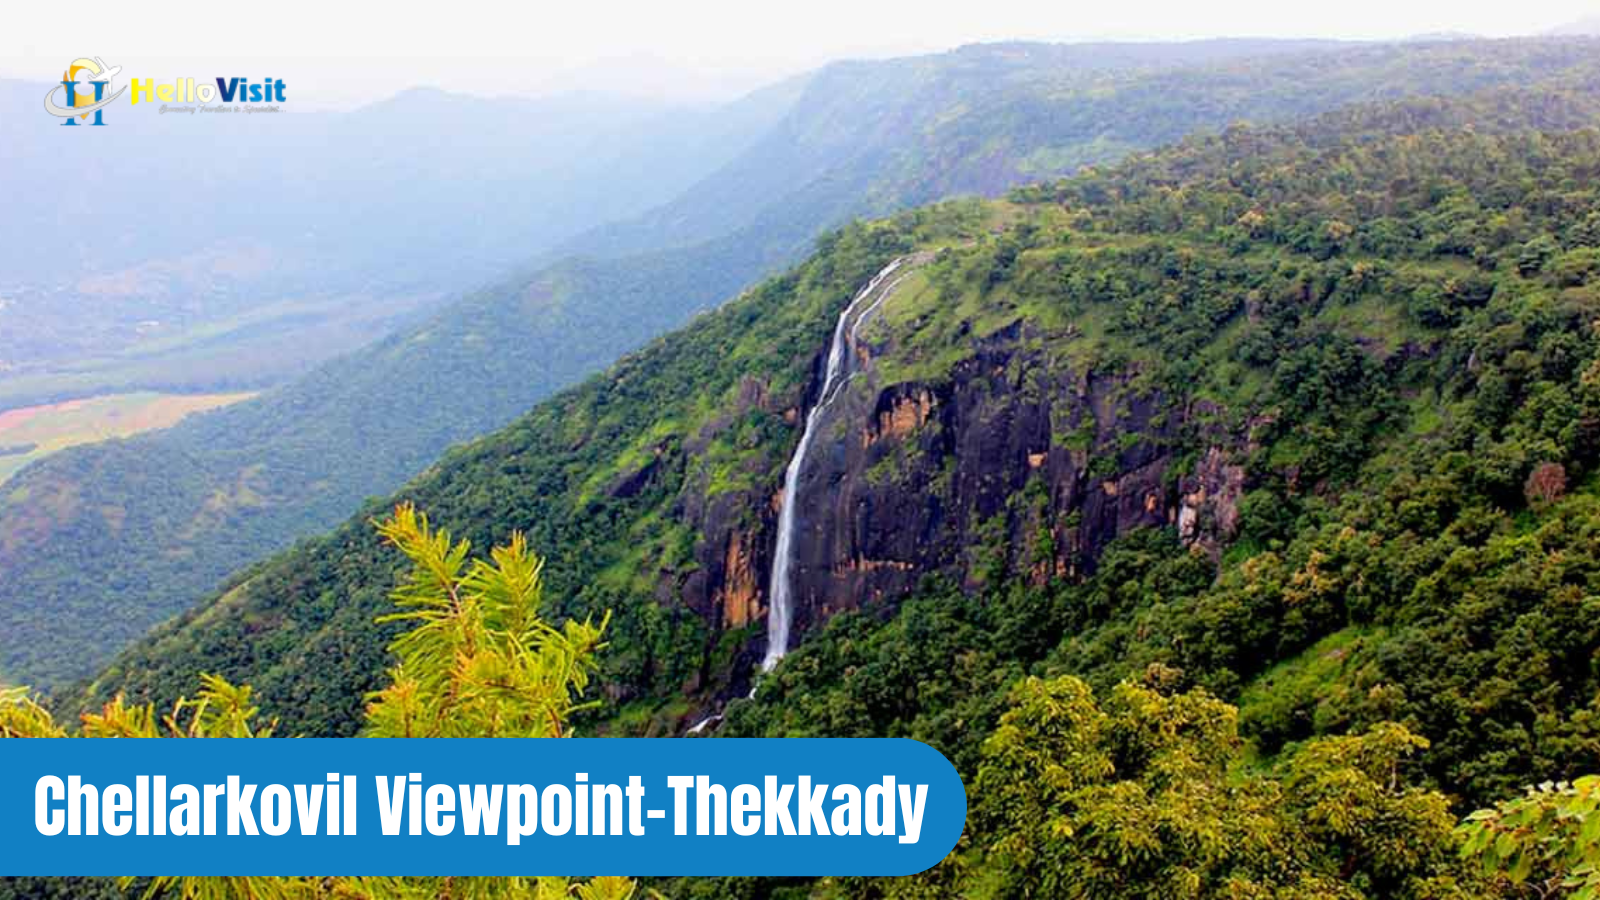 Chellarkovil Viewpoint-Thekkady